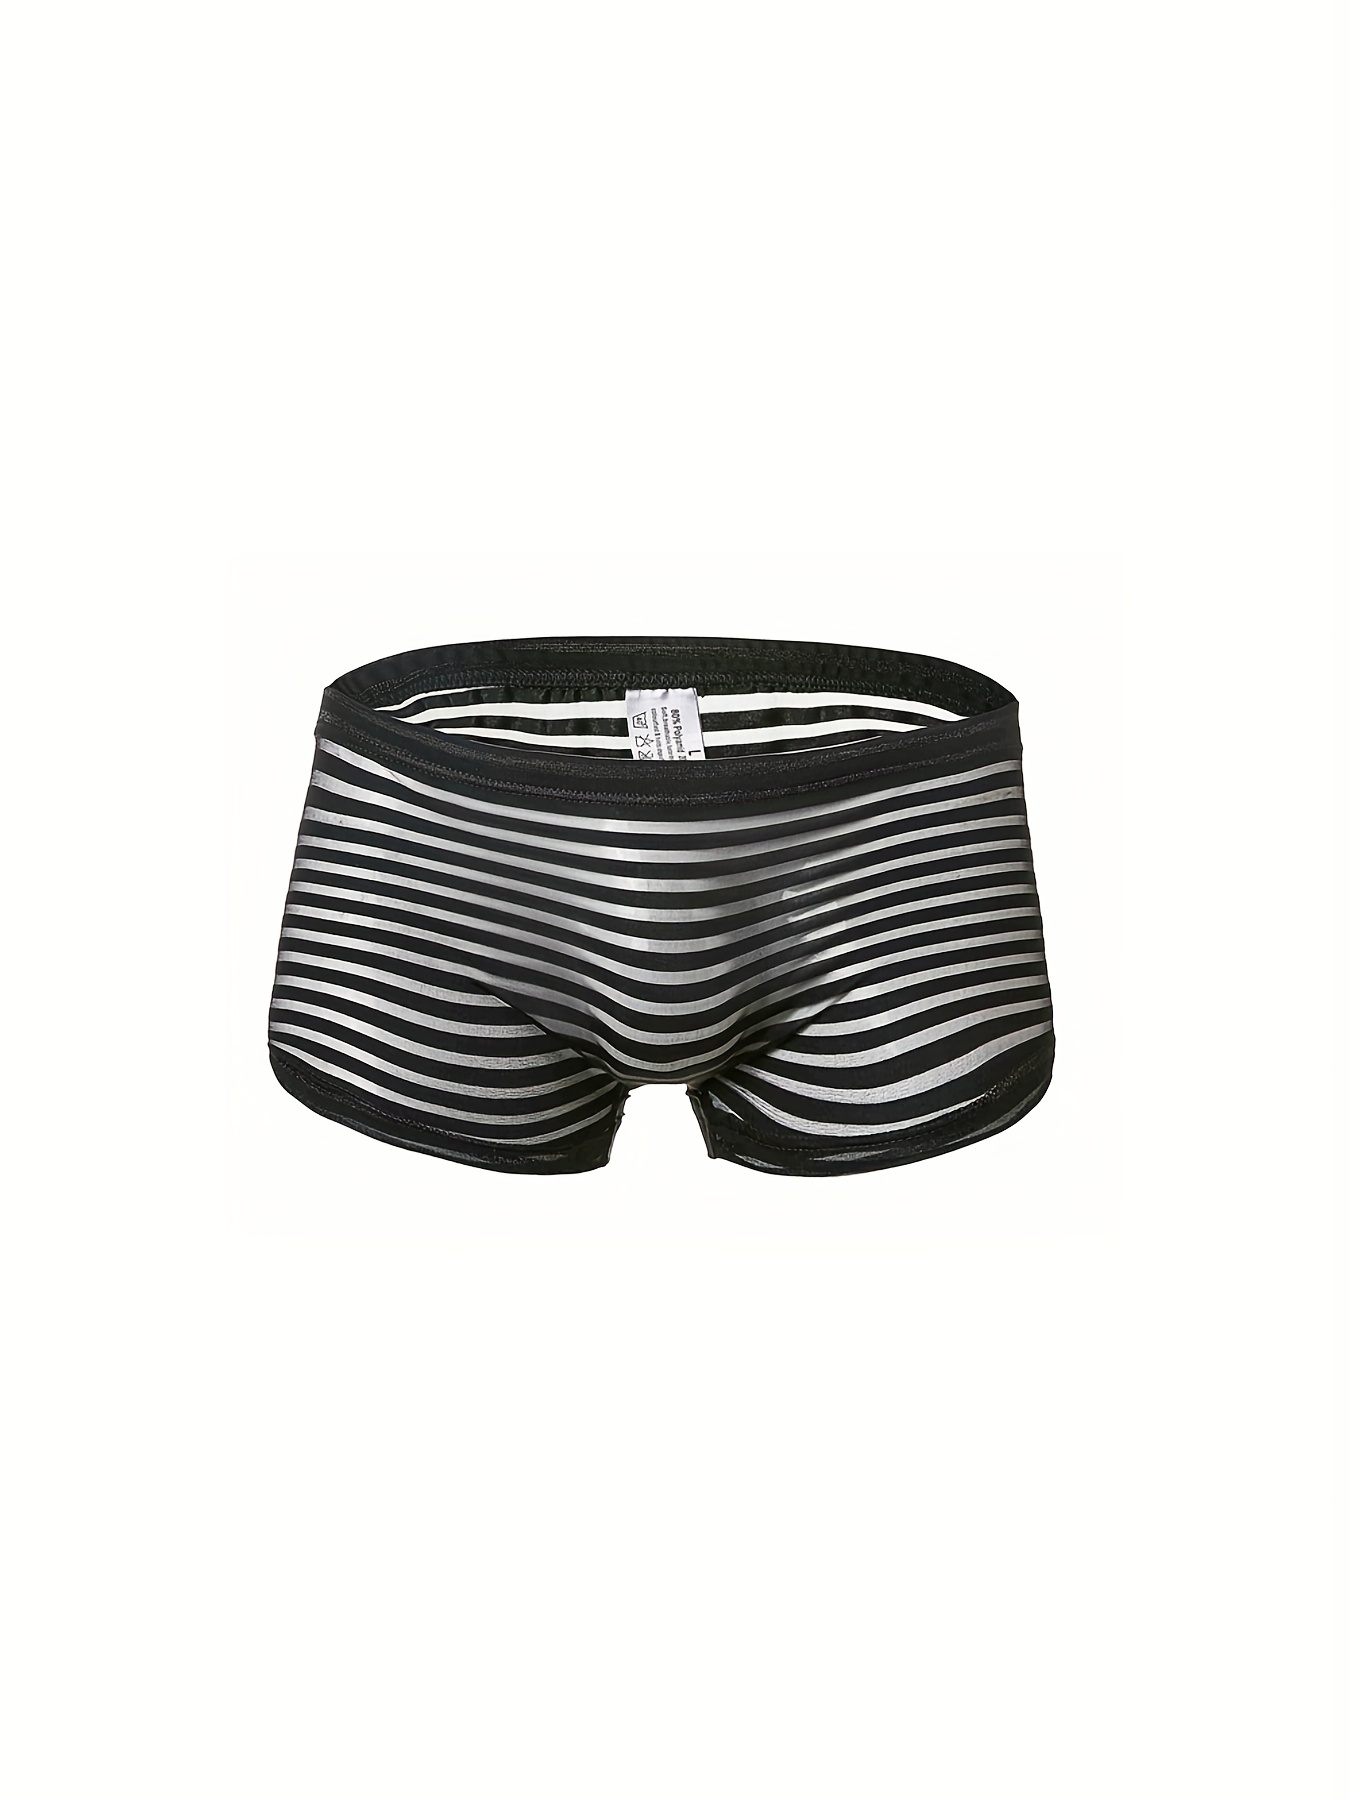 Men's Fashion Striped Mesh See Black Underwear Boxers - Temu Canada